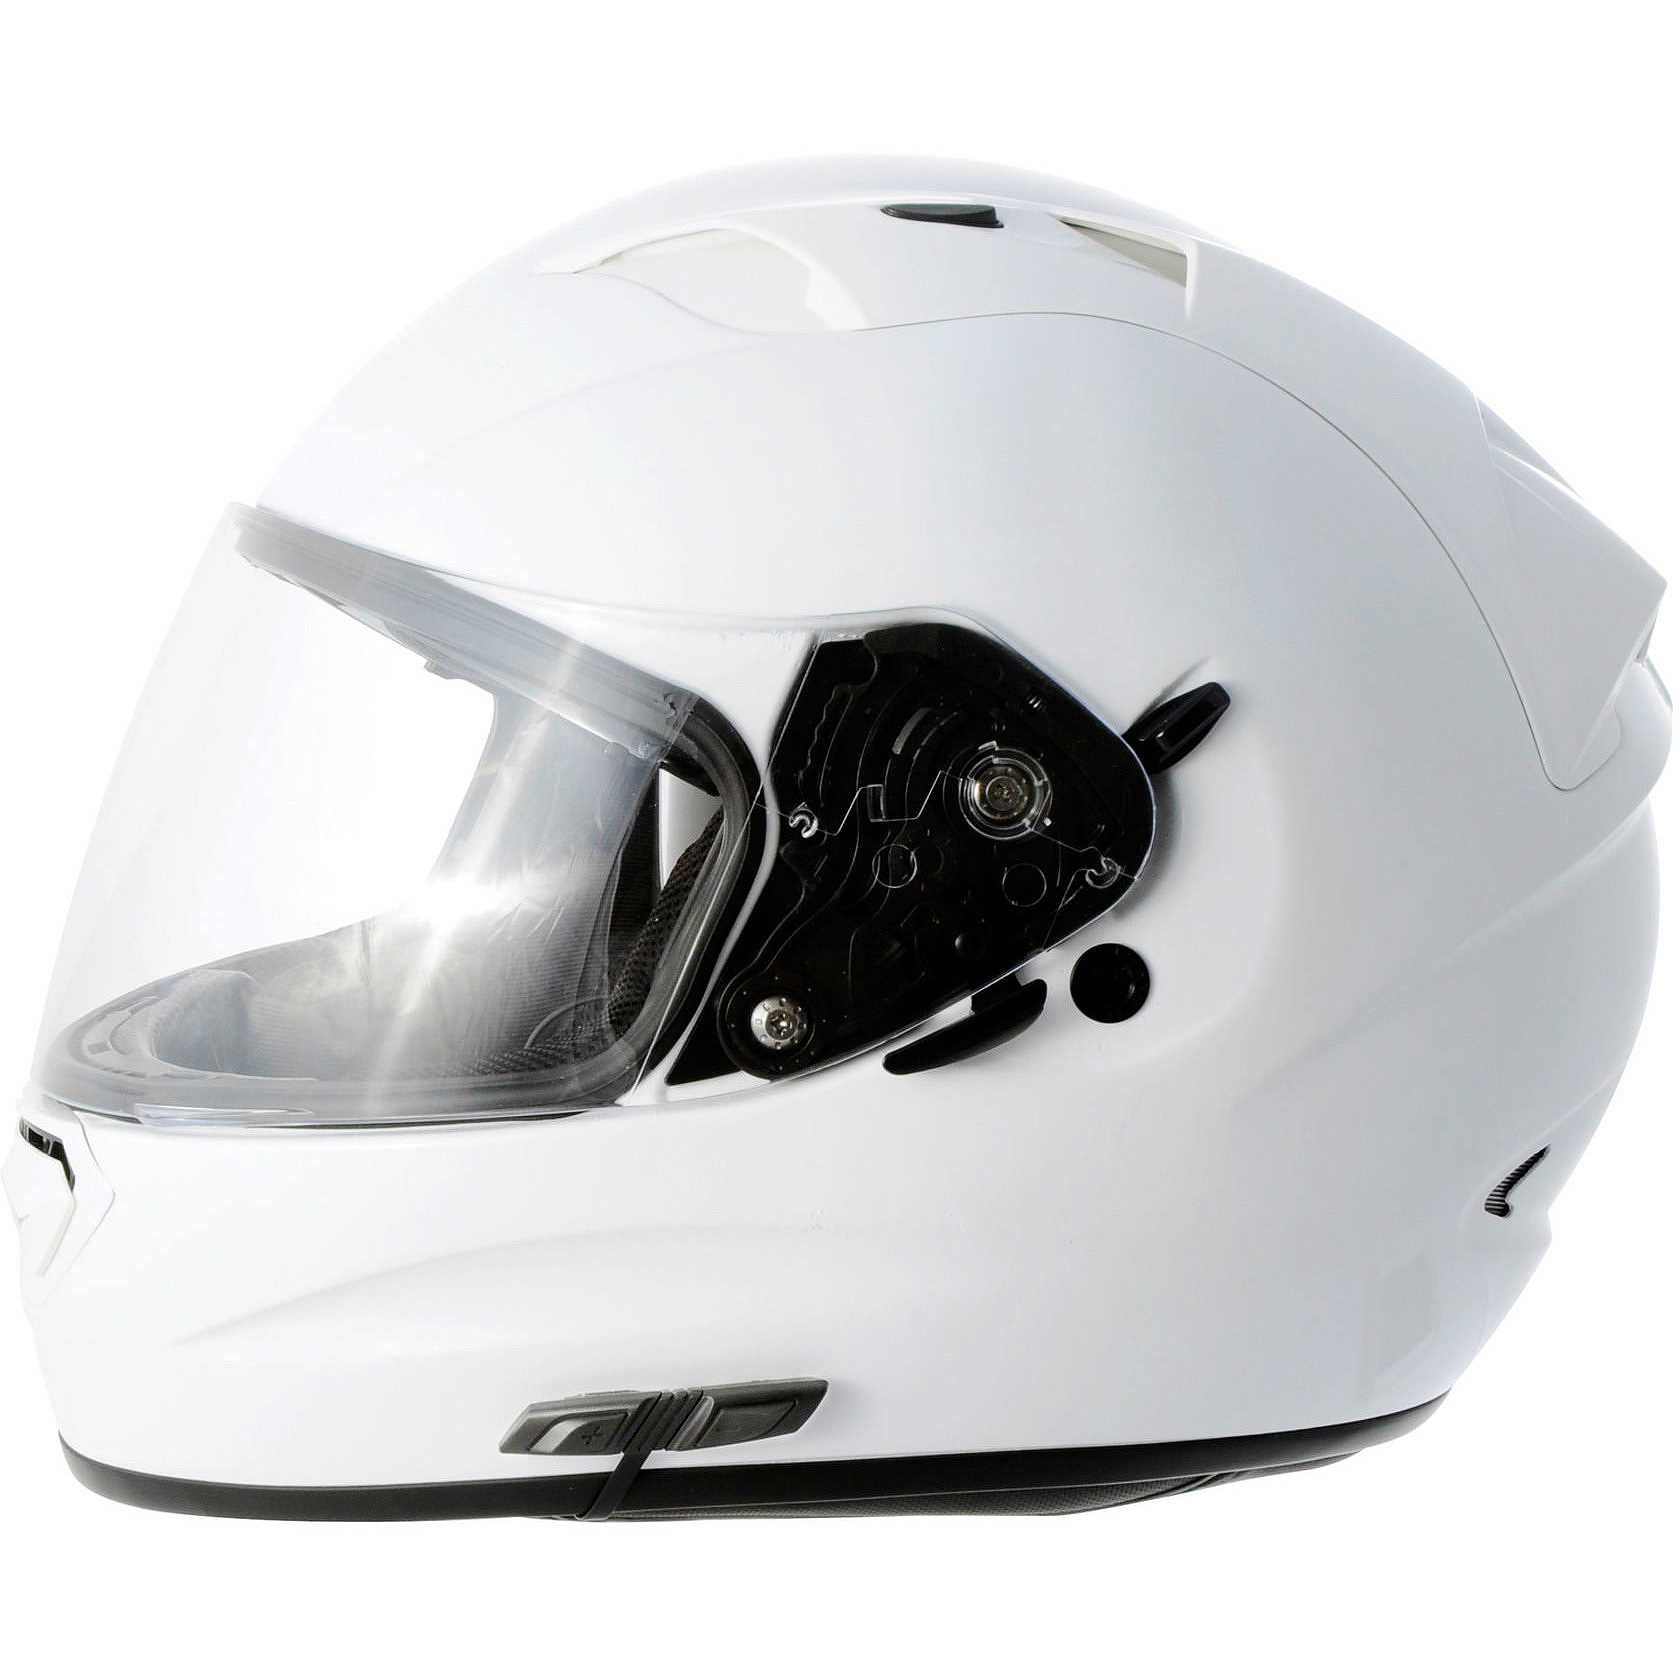 Intercom moto Sena 3S pour casque Intégral et modulable